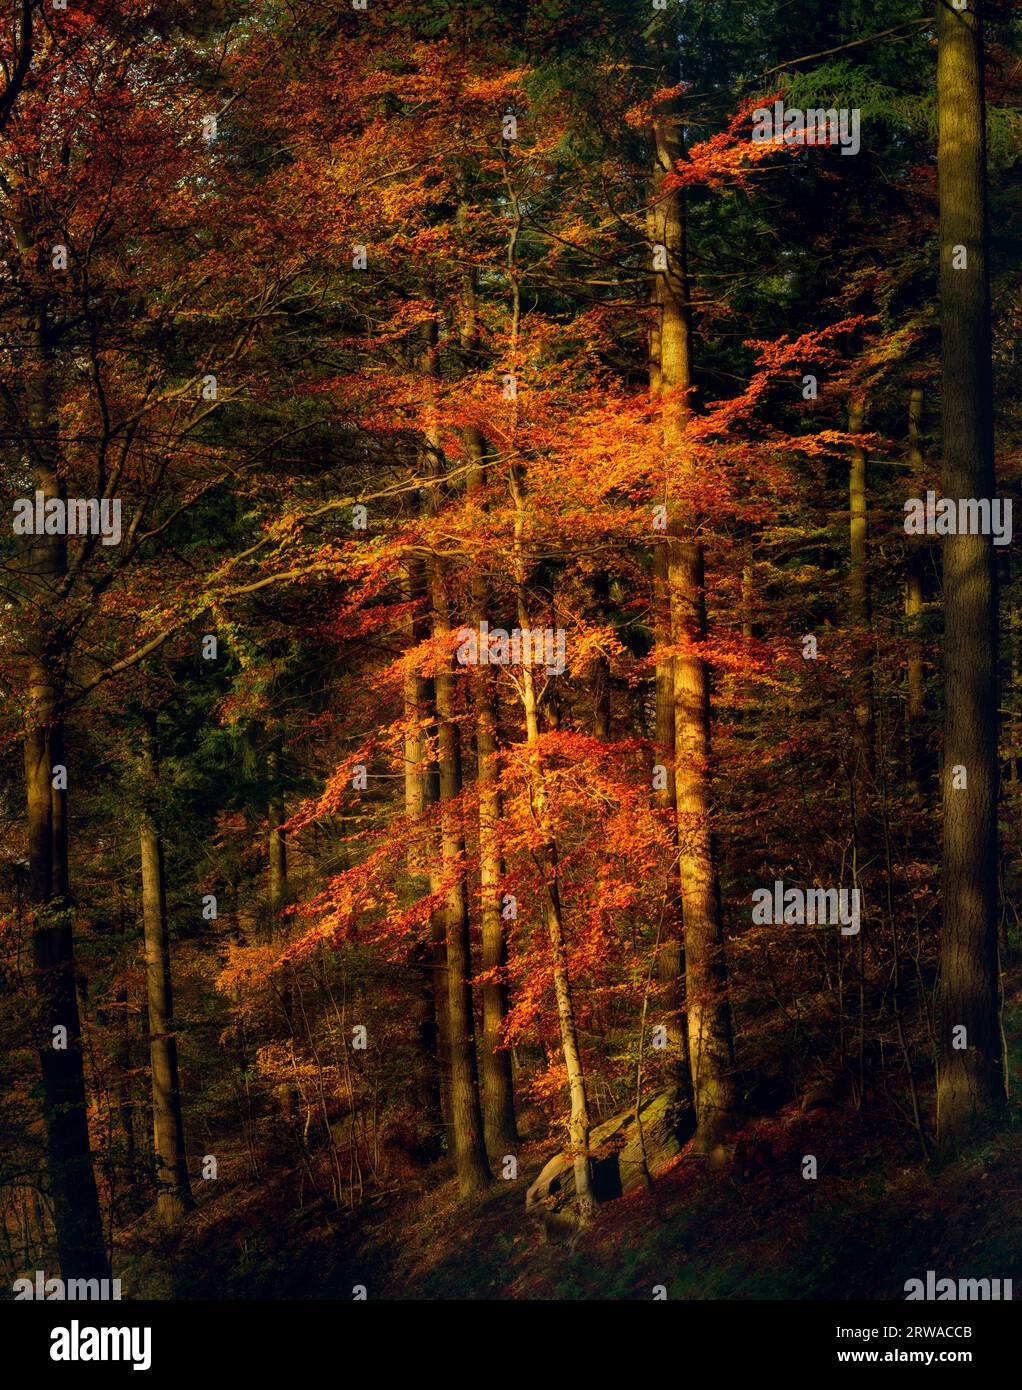 Beleuchteter Baum im warmen Abendlicht des Herbstes, der sich in dunklen Wäldern mit leuchtend oranger Farbe abhebt Stockfoto